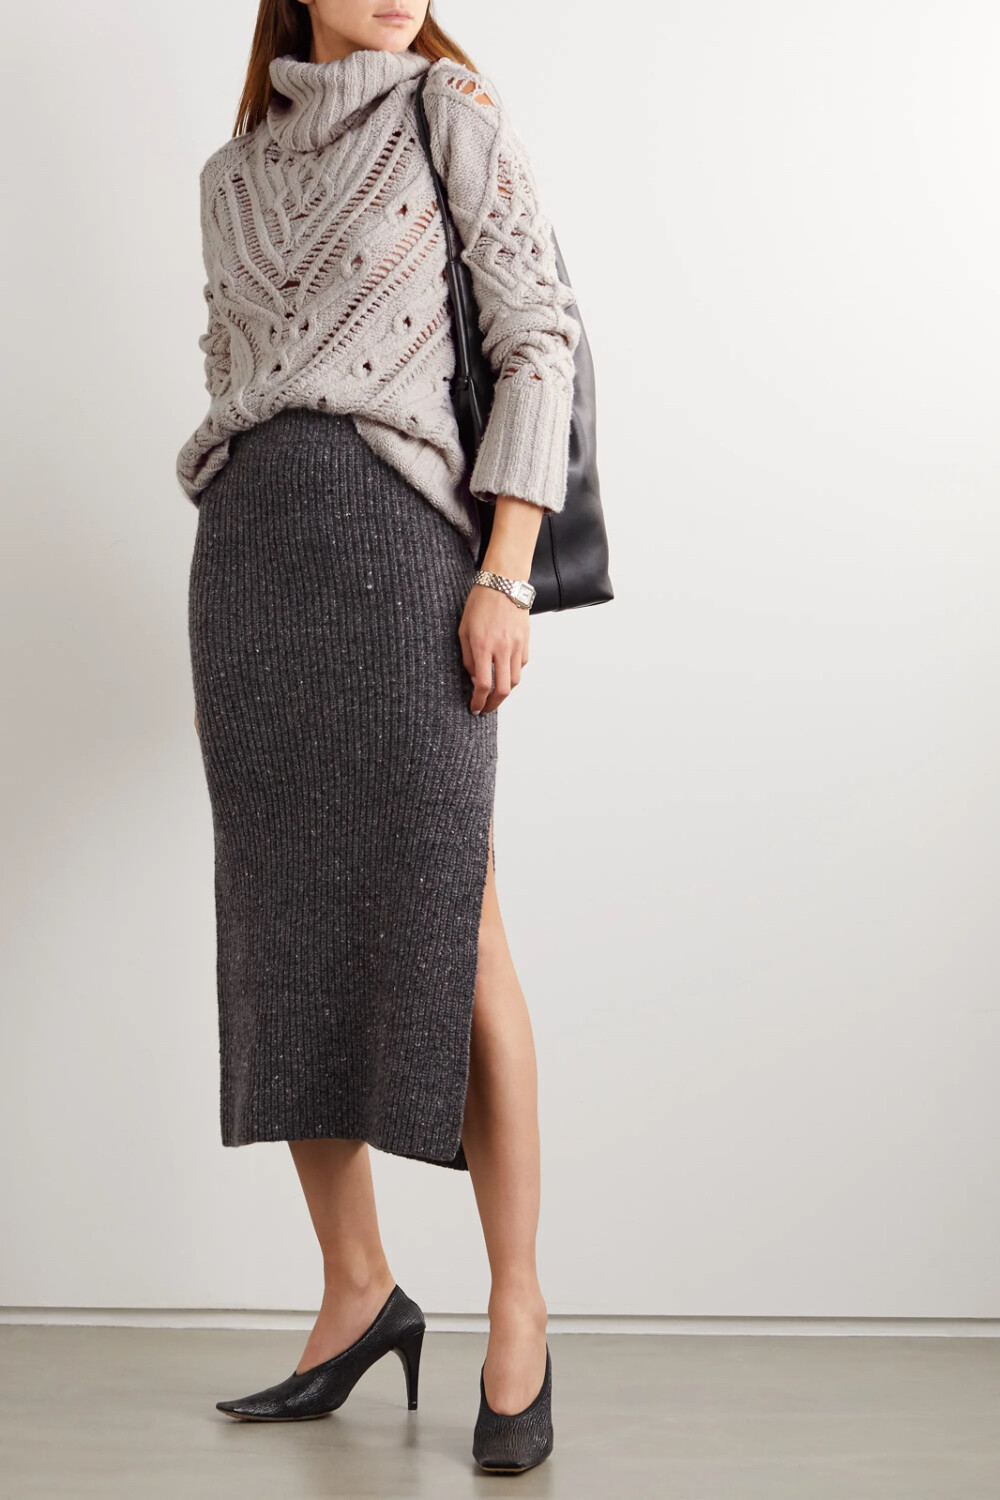 Altuzarra 这款 “Ernestine” 绞花针织毛衣出自 2020 秋冬系列，面料中含有大量厚实羊毛，因此手感分外柔软温暖。宽大高领配合宽松版型，显得慵懒随性，宽幅罗纹边则将轮廓稍稍固定，增添几分干练。不妨搭配同品牌 “Tony” 半身裙，并将衣摆半束入裙腰。